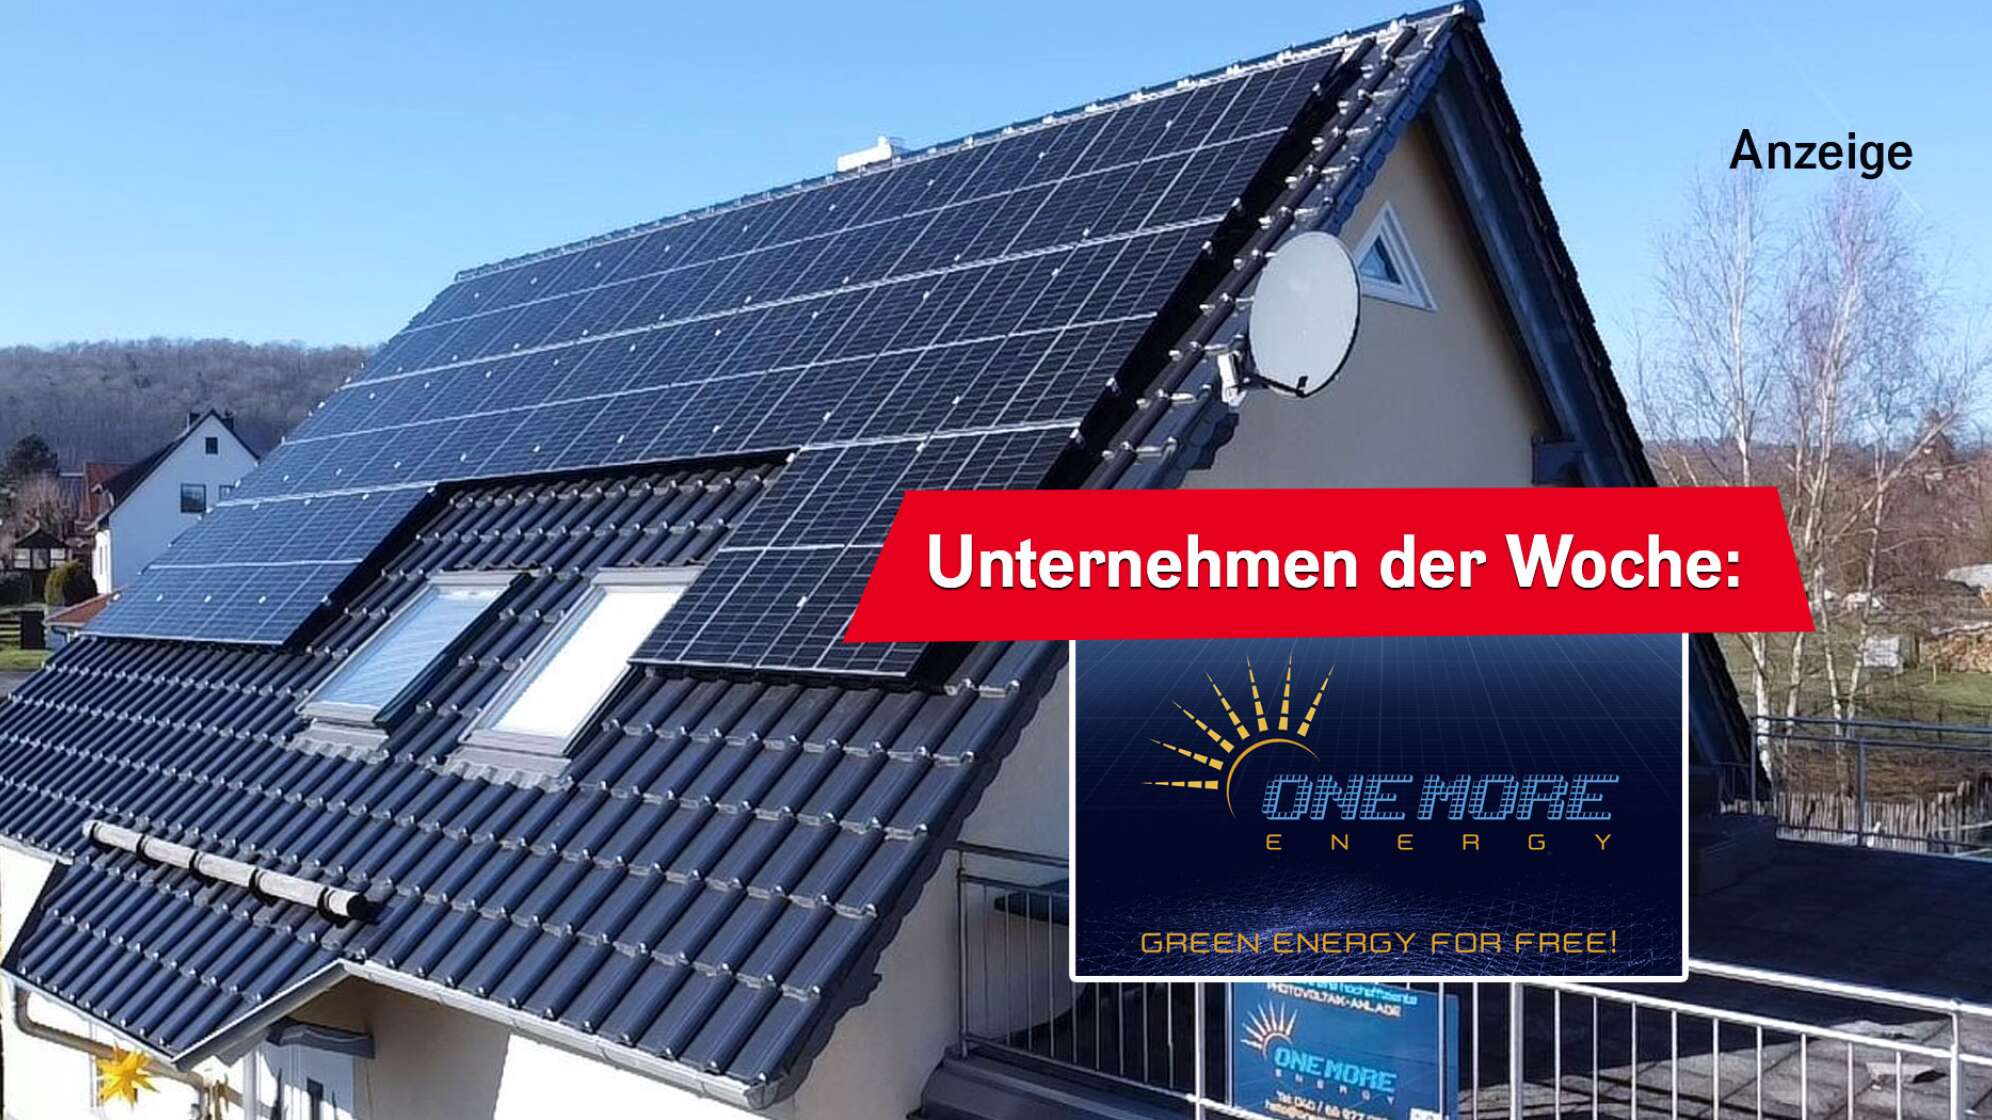 Ein Bild von einem Haus mit einer Photovoltaikanlage auf dem Dach, dazu die Aufschrift "Unternehmen der Woche:" und das Logo der OneMore Energy GmbH